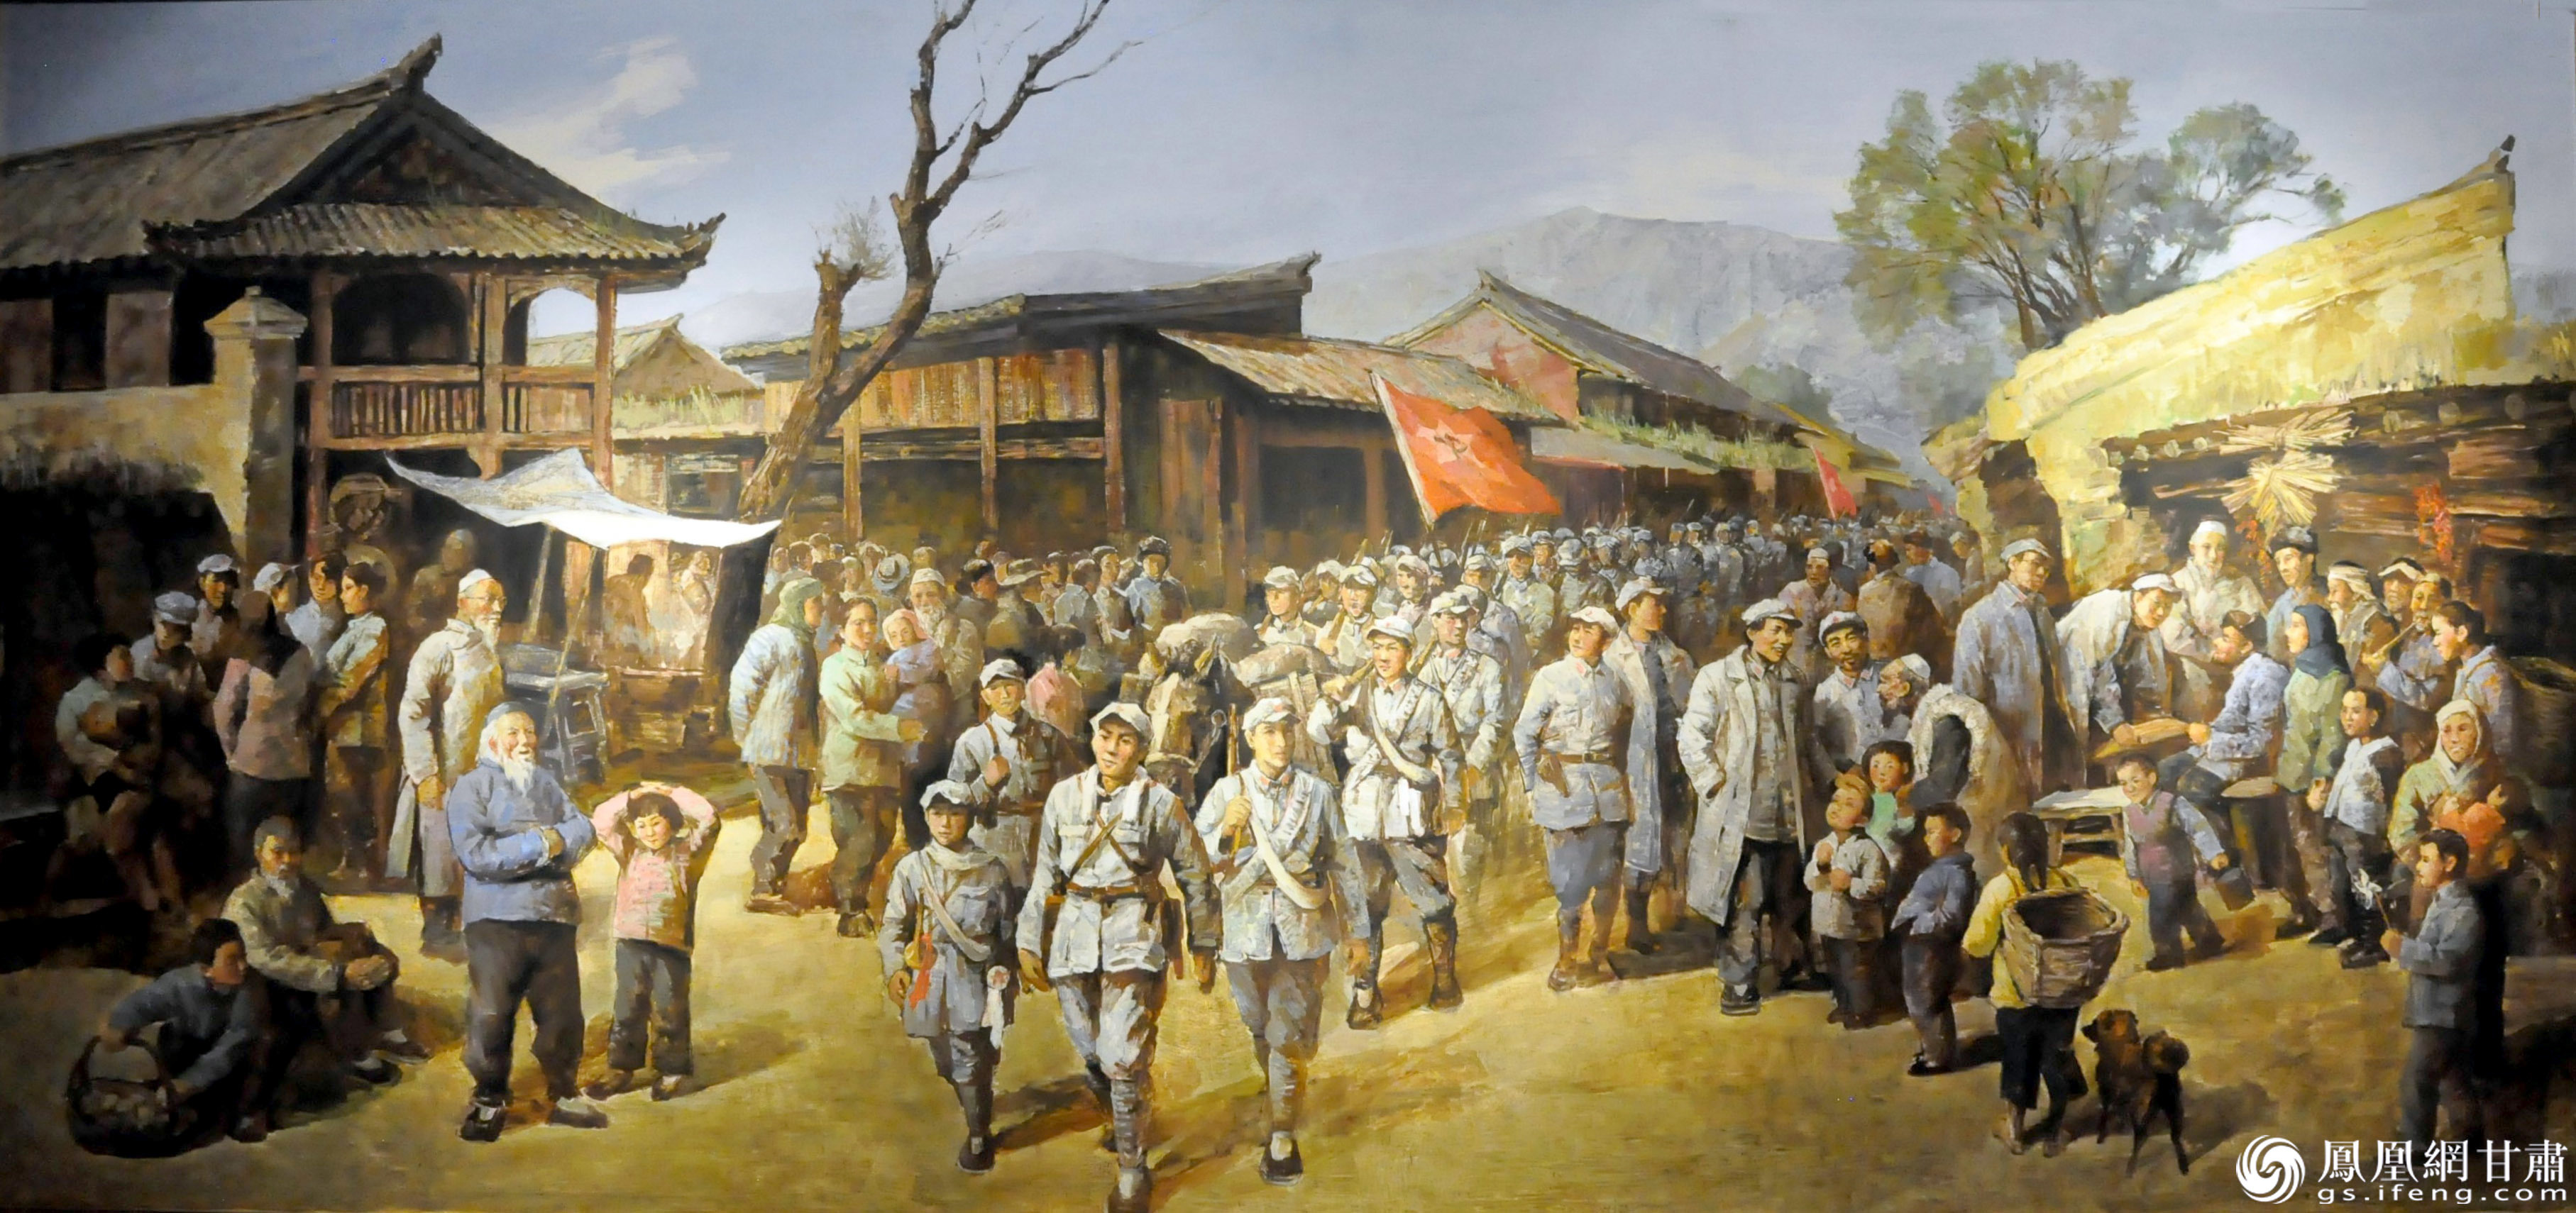 油画《红军进入哈达铺》反映出红军到达哈达铺，受到当地群众热烈欢迎。哈达铺红军长征纪念馆供图